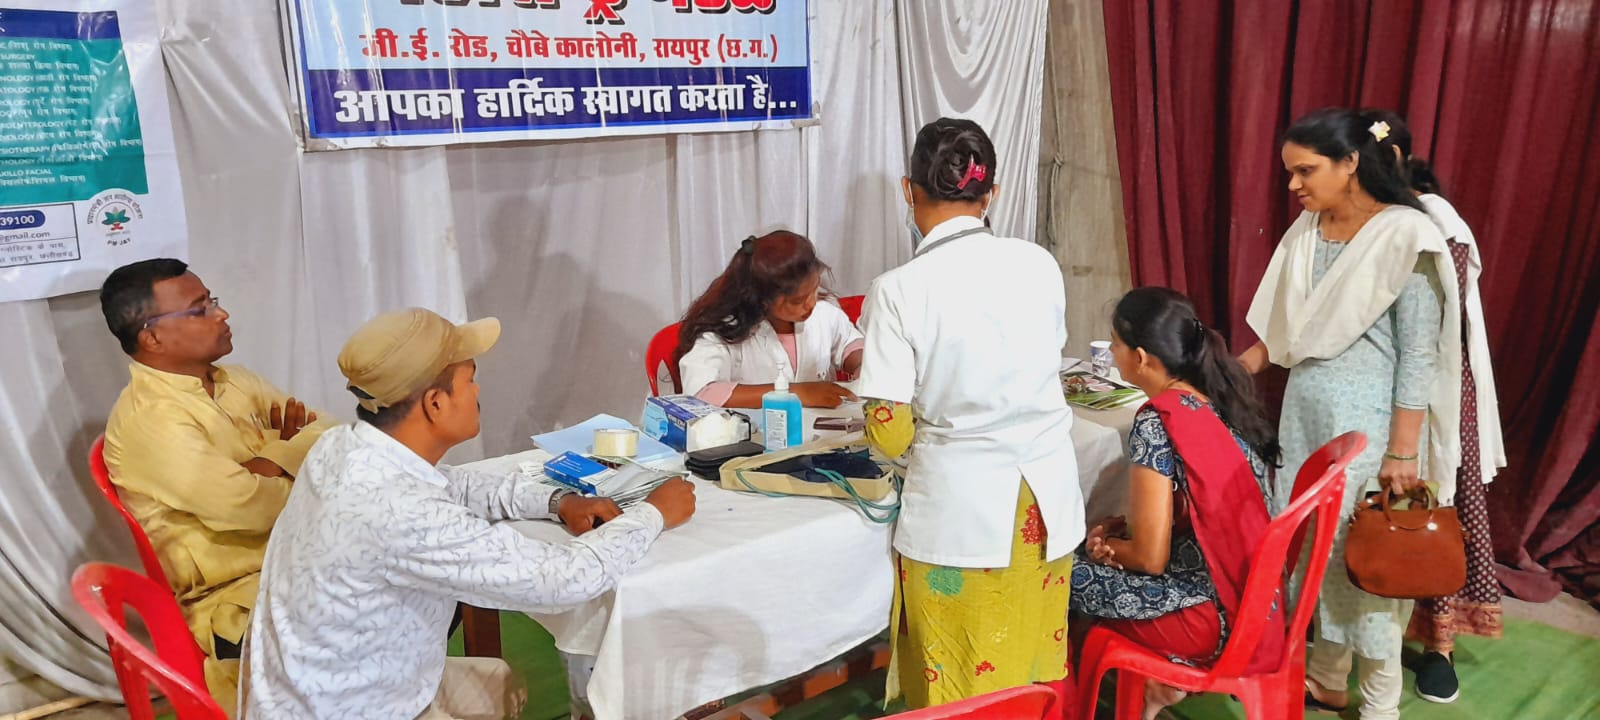 महाराष्ट्र मंडळ में लगा निःशुल्क स्वास्थ्य कैंप, बीपी शूगर के साथ लोगों ने कराई आंखों की जांच